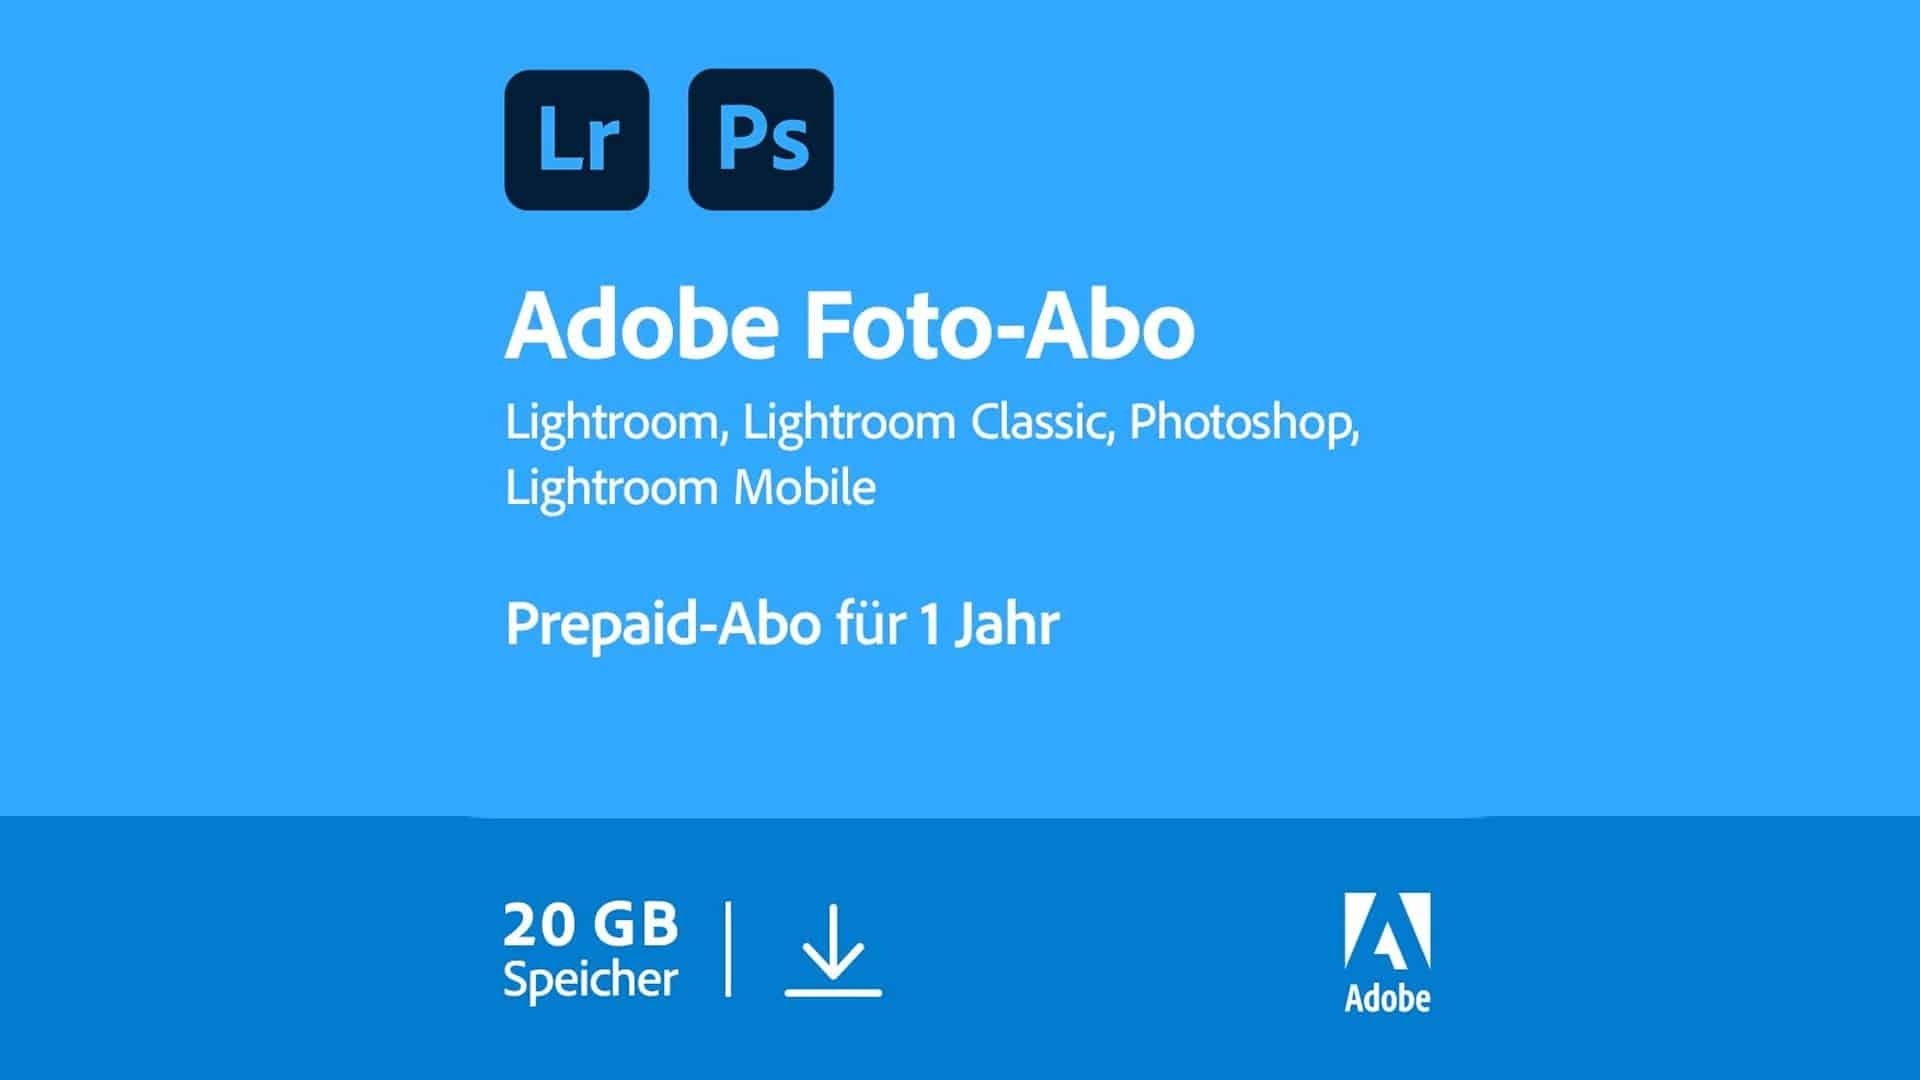 Adobe Foto-Abo gerade wieder im Angebot